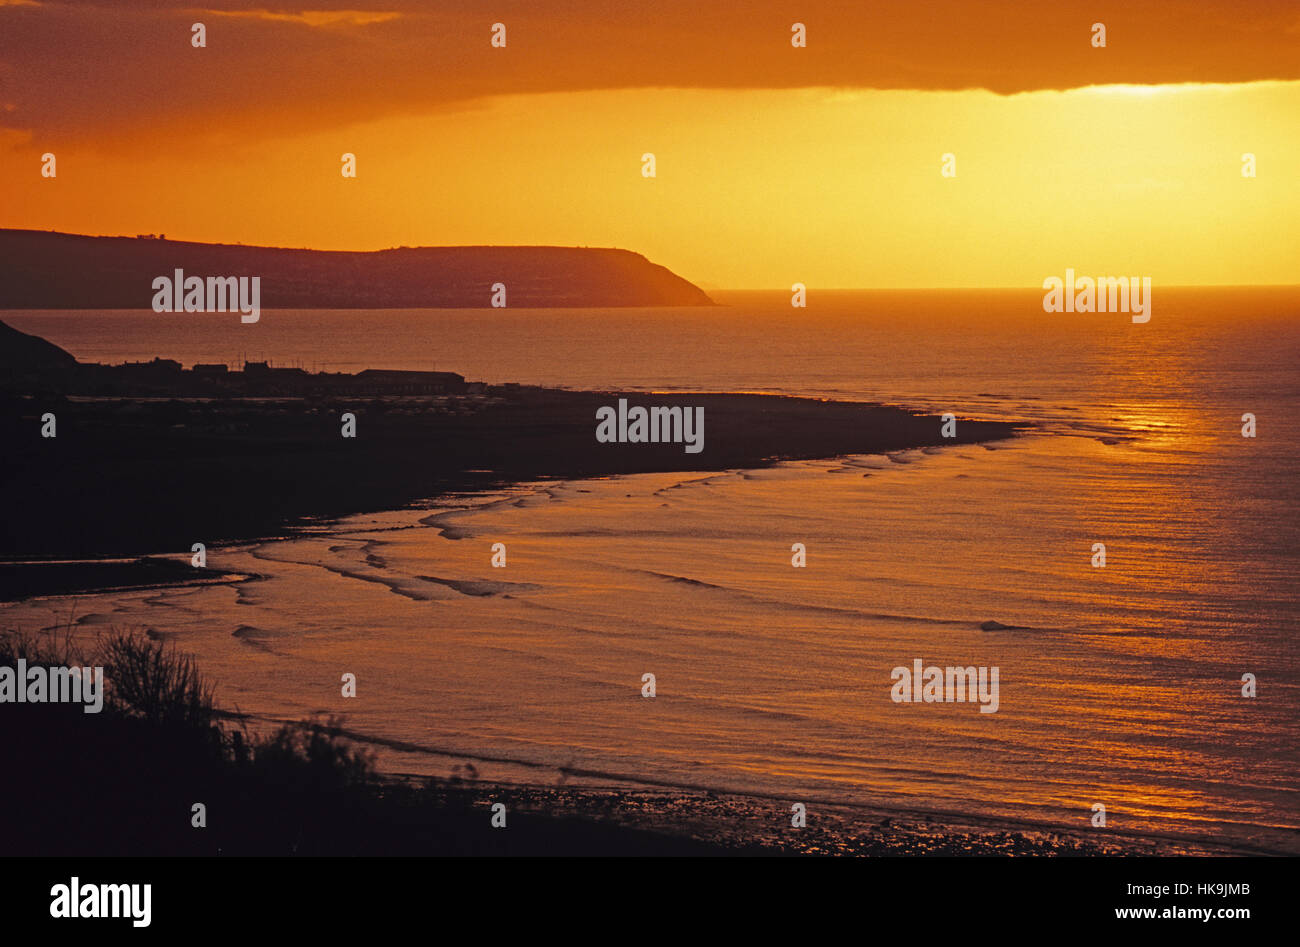 La baie de Cardigan au crépuscule sur la côte ouest du pays de Galles. Banque D'Images